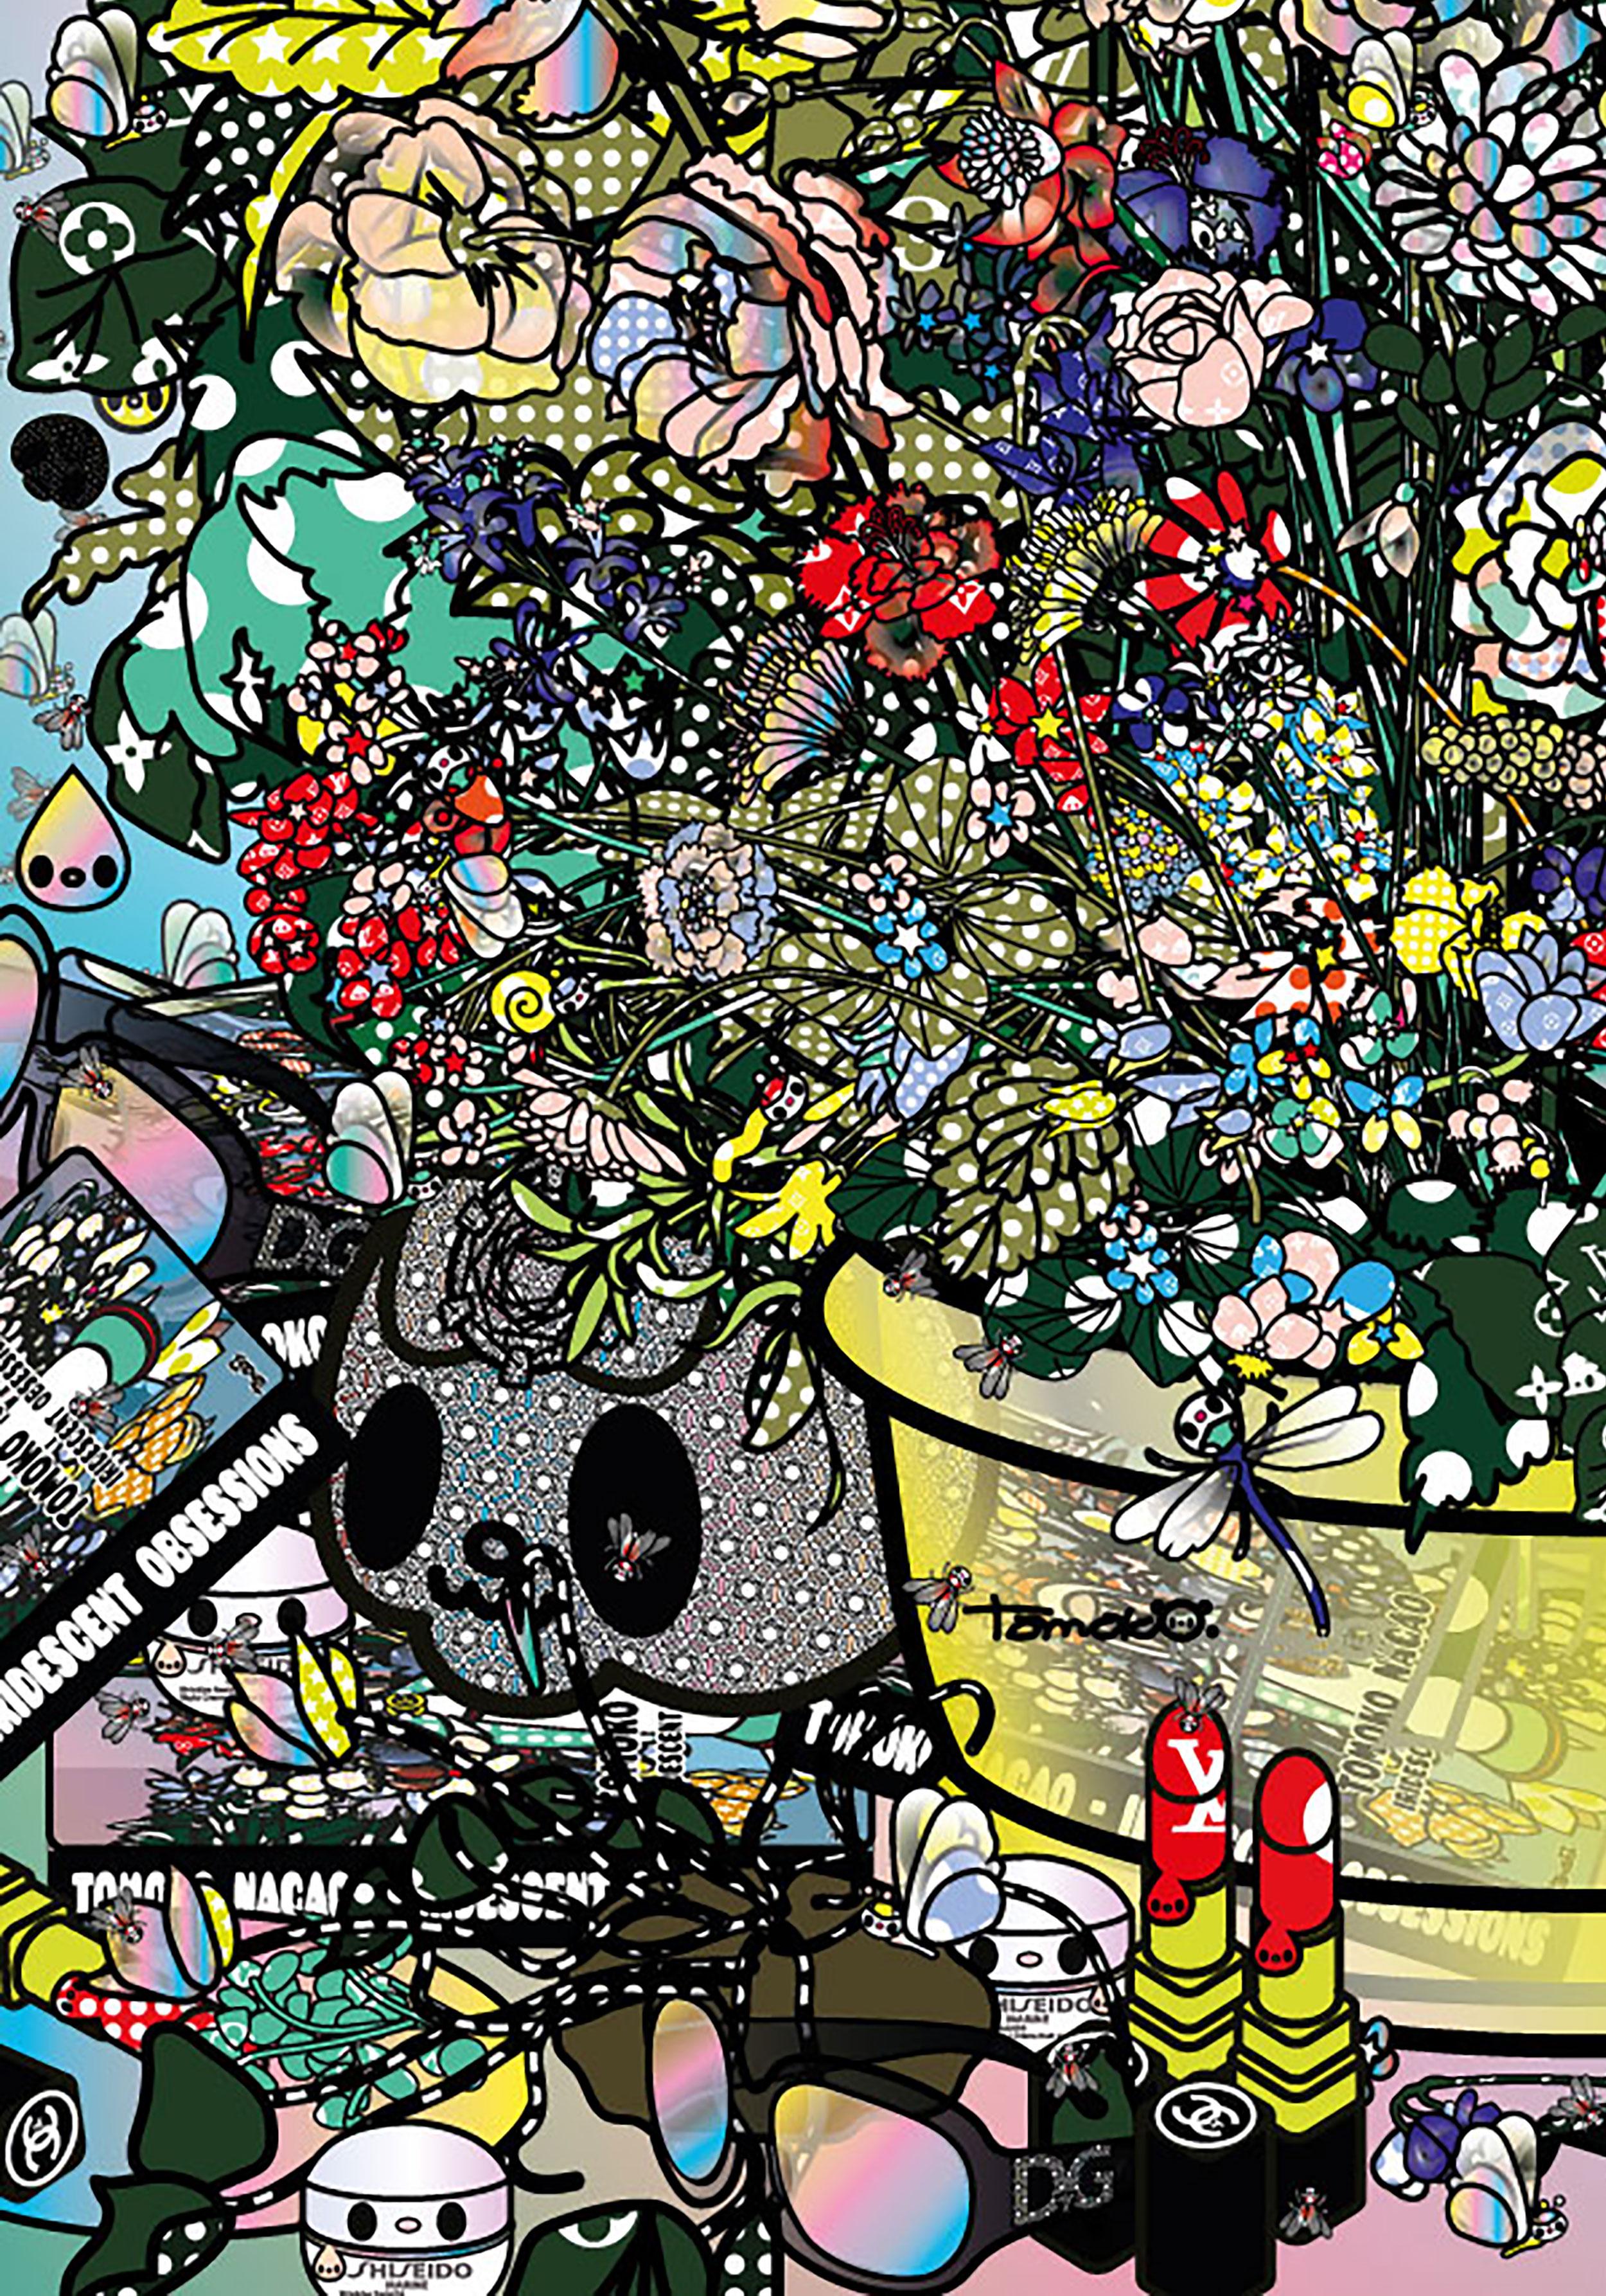 Flowers 3 - Pop Art Print by Tomoko Nagao